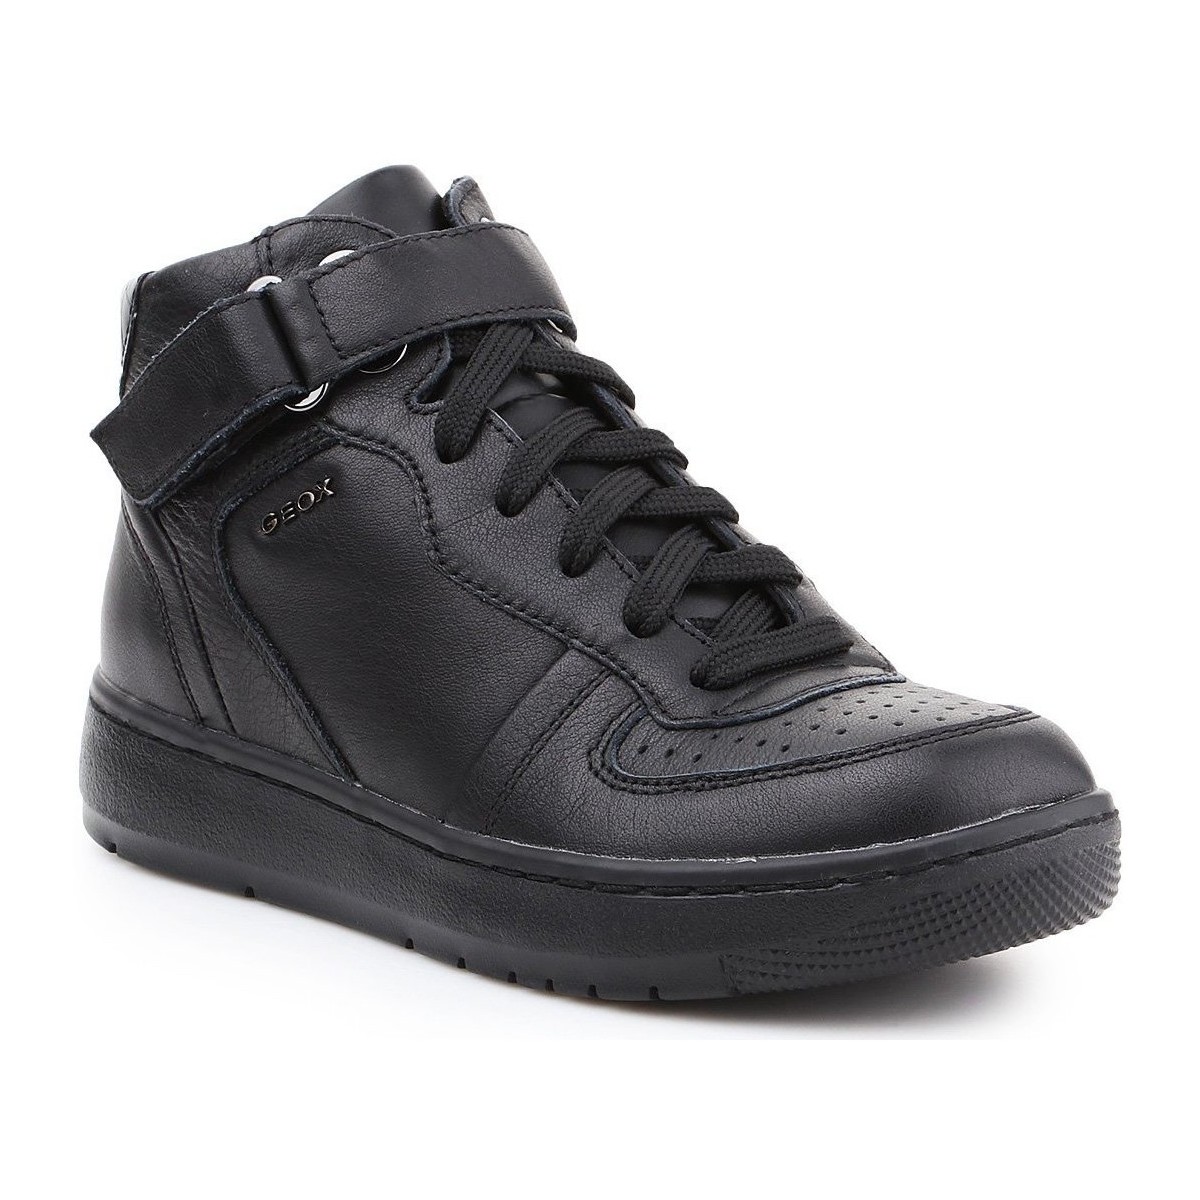 Schuhe Damen Sneaker High Geox Lifestyle Schuhe  D Nimat A D540PA-00085-C9999 Schwarz